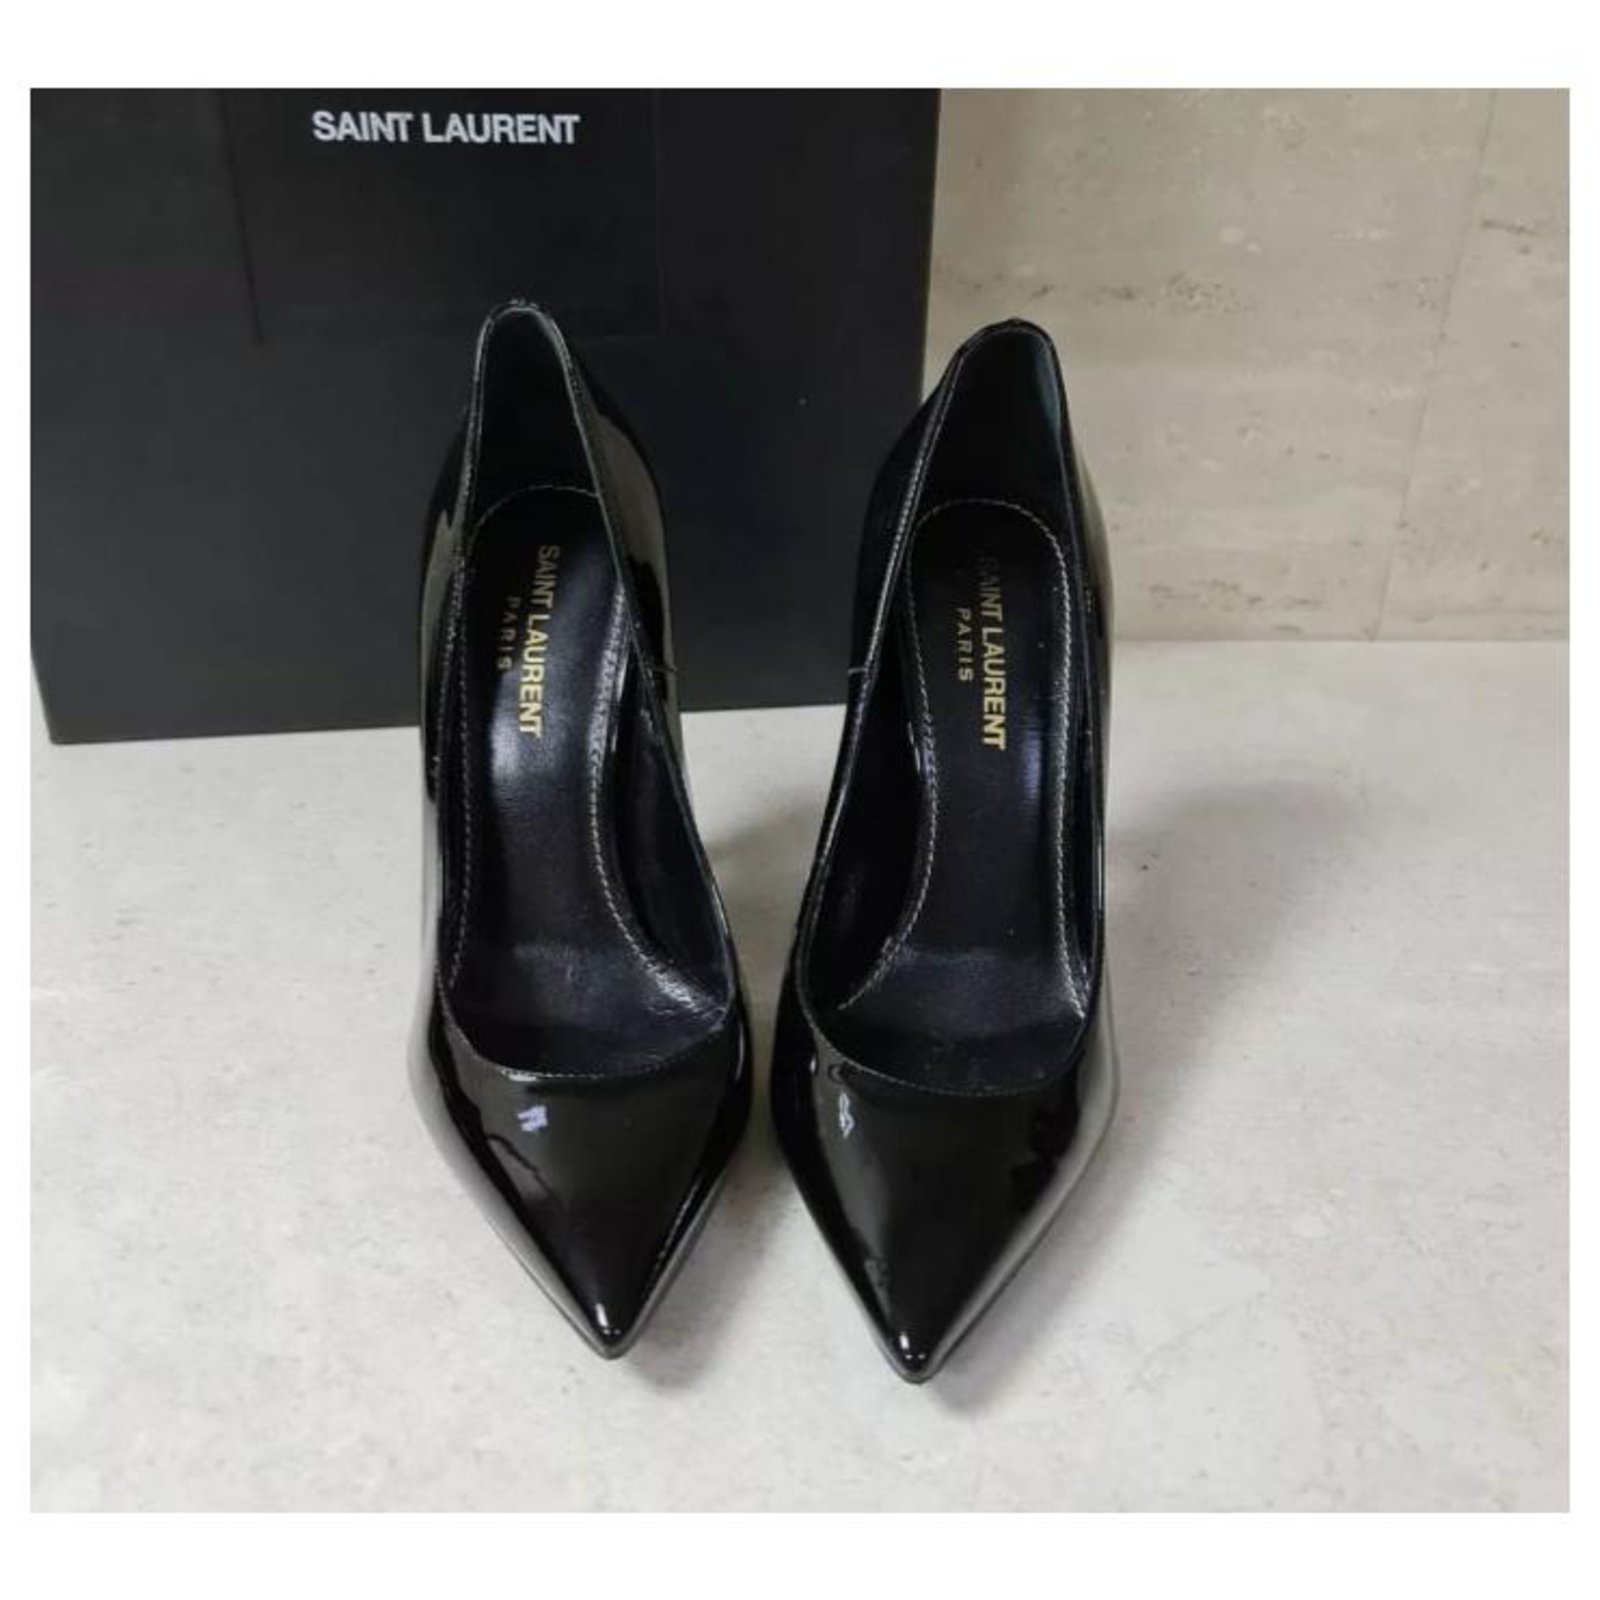 Yves Saint Laurent Opium Patent Leather Pumps Heels Shoes Sz 36,5 Black ...